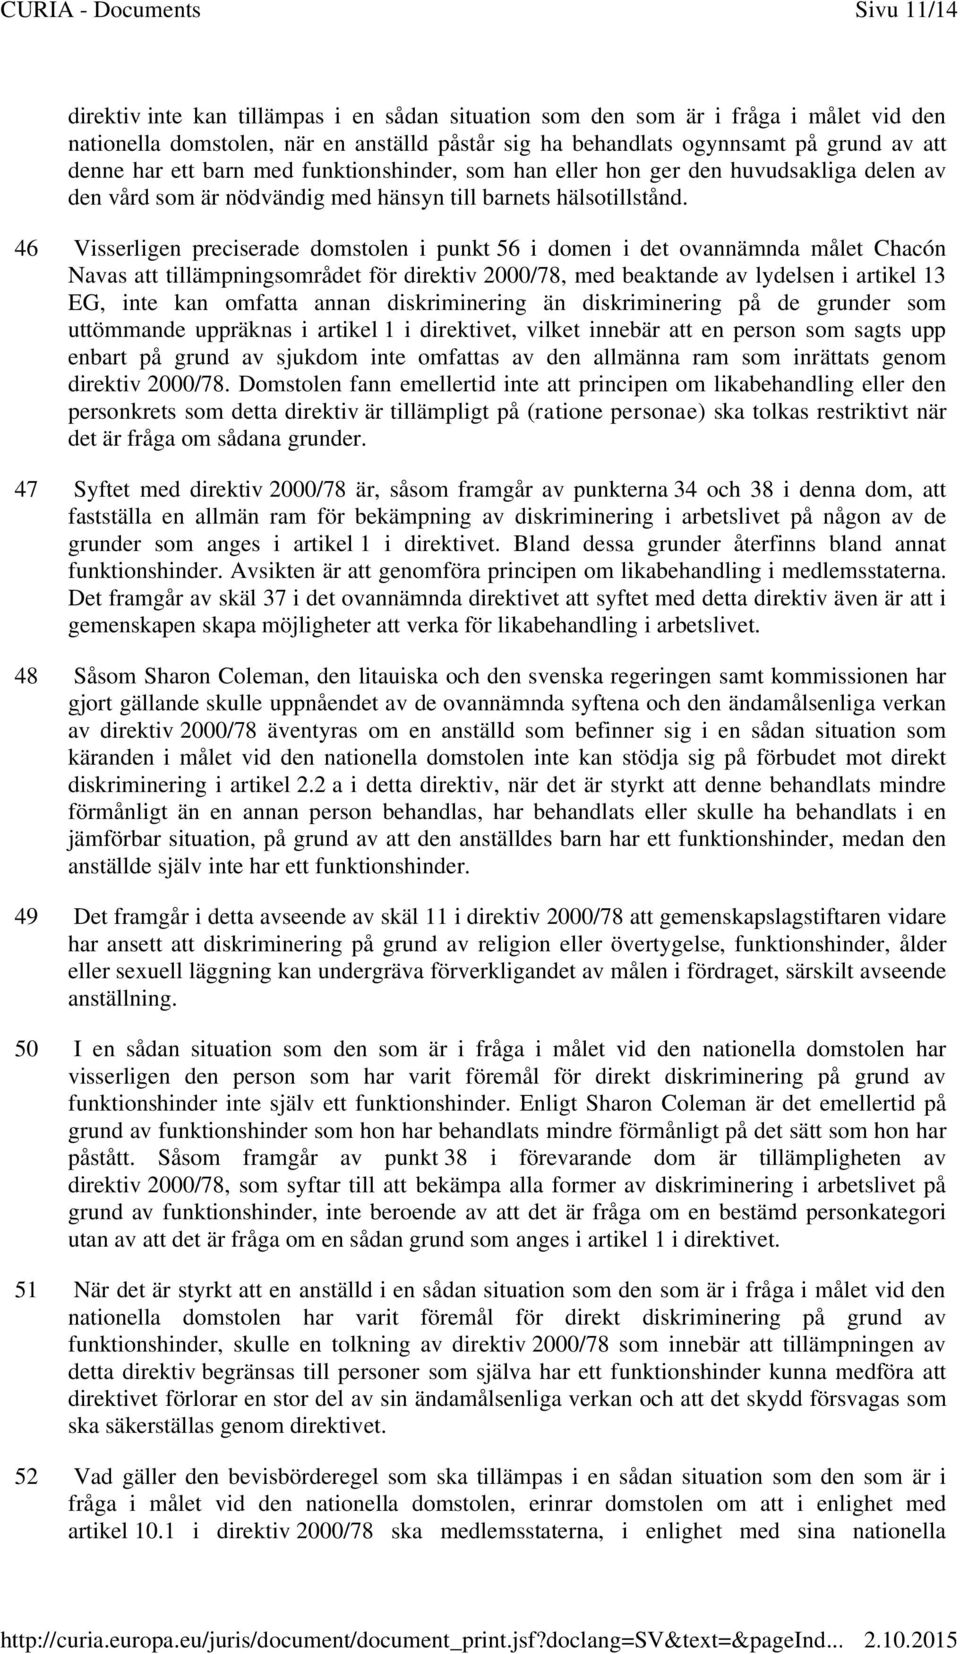 46 Visserligen preciserade domstolen i punkt 56 i domen i det ovannämnda målet Chacón Navas att tillämpningsområdet för direktiv 2000/78, med beaktande av lydelsen i artikel 13 EG, inte kan omfatta